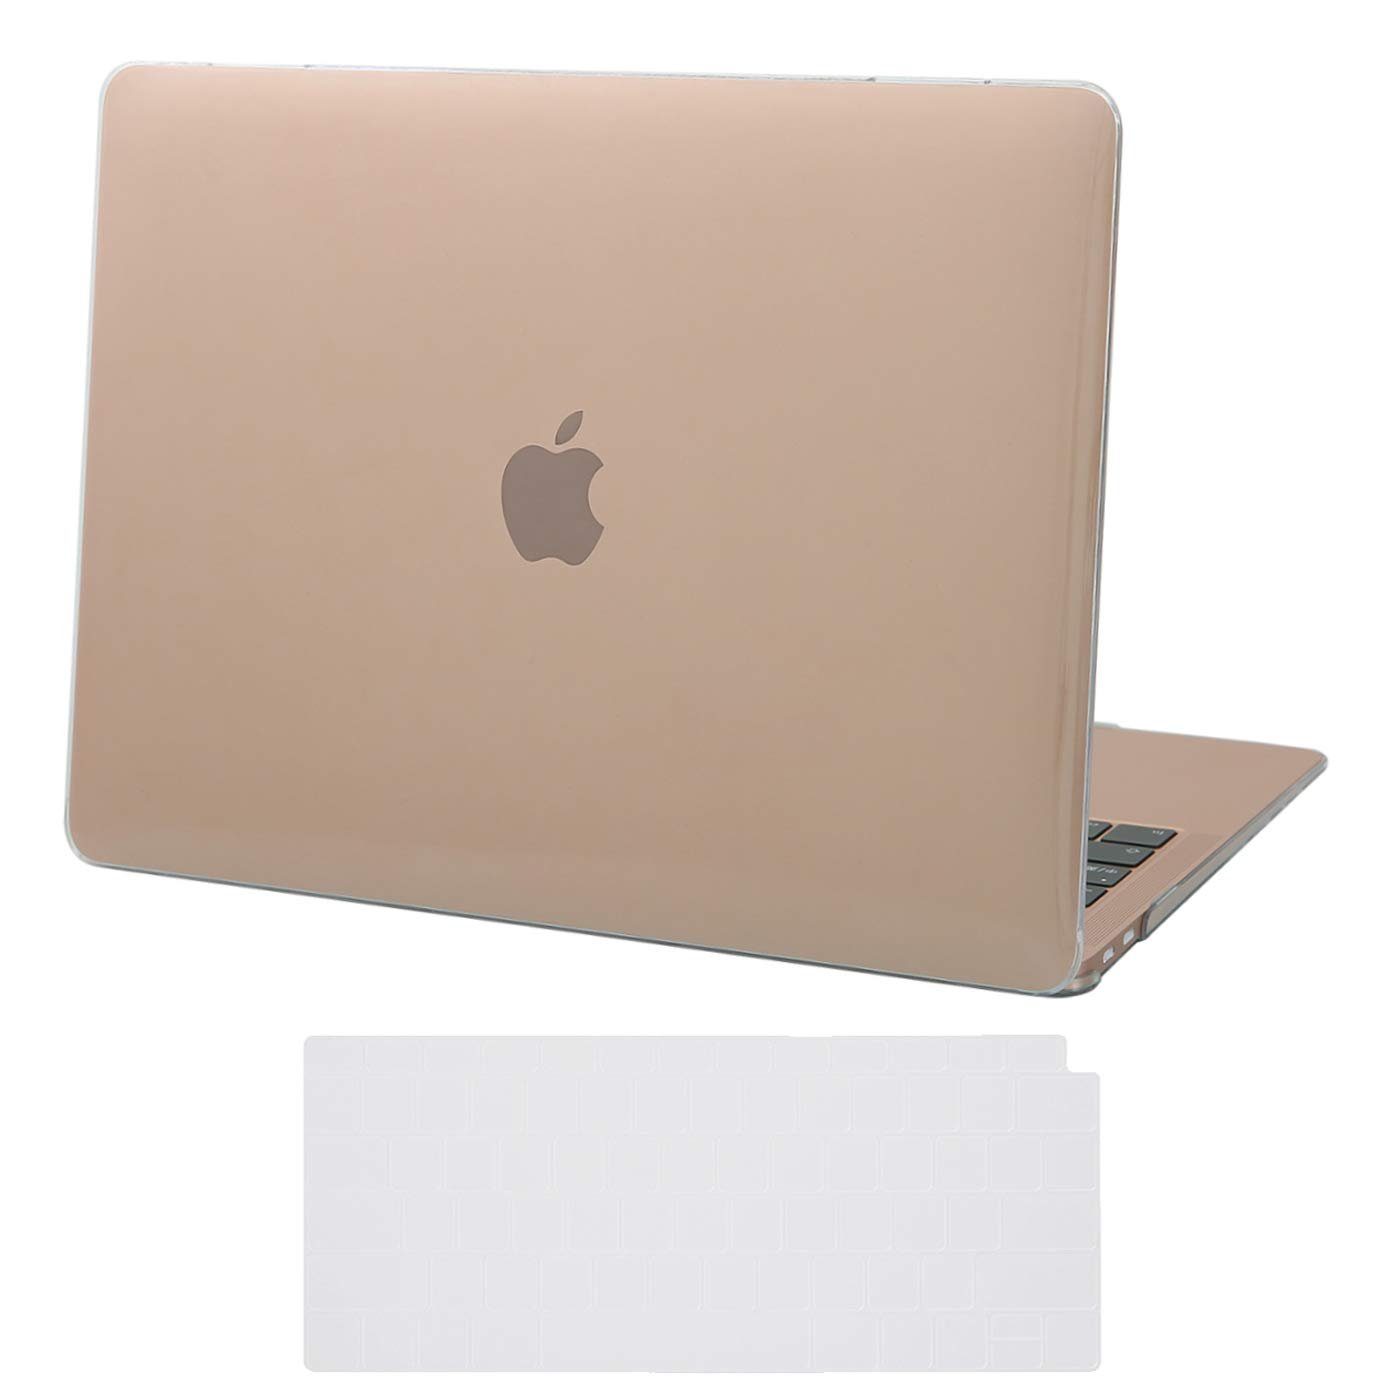 MacBook Air 13 case MacBook Pro 15 case fairy tale MacBook Pro M1 case clear Macbook Pro Retina case Macbook Air 11 case MacBook case art